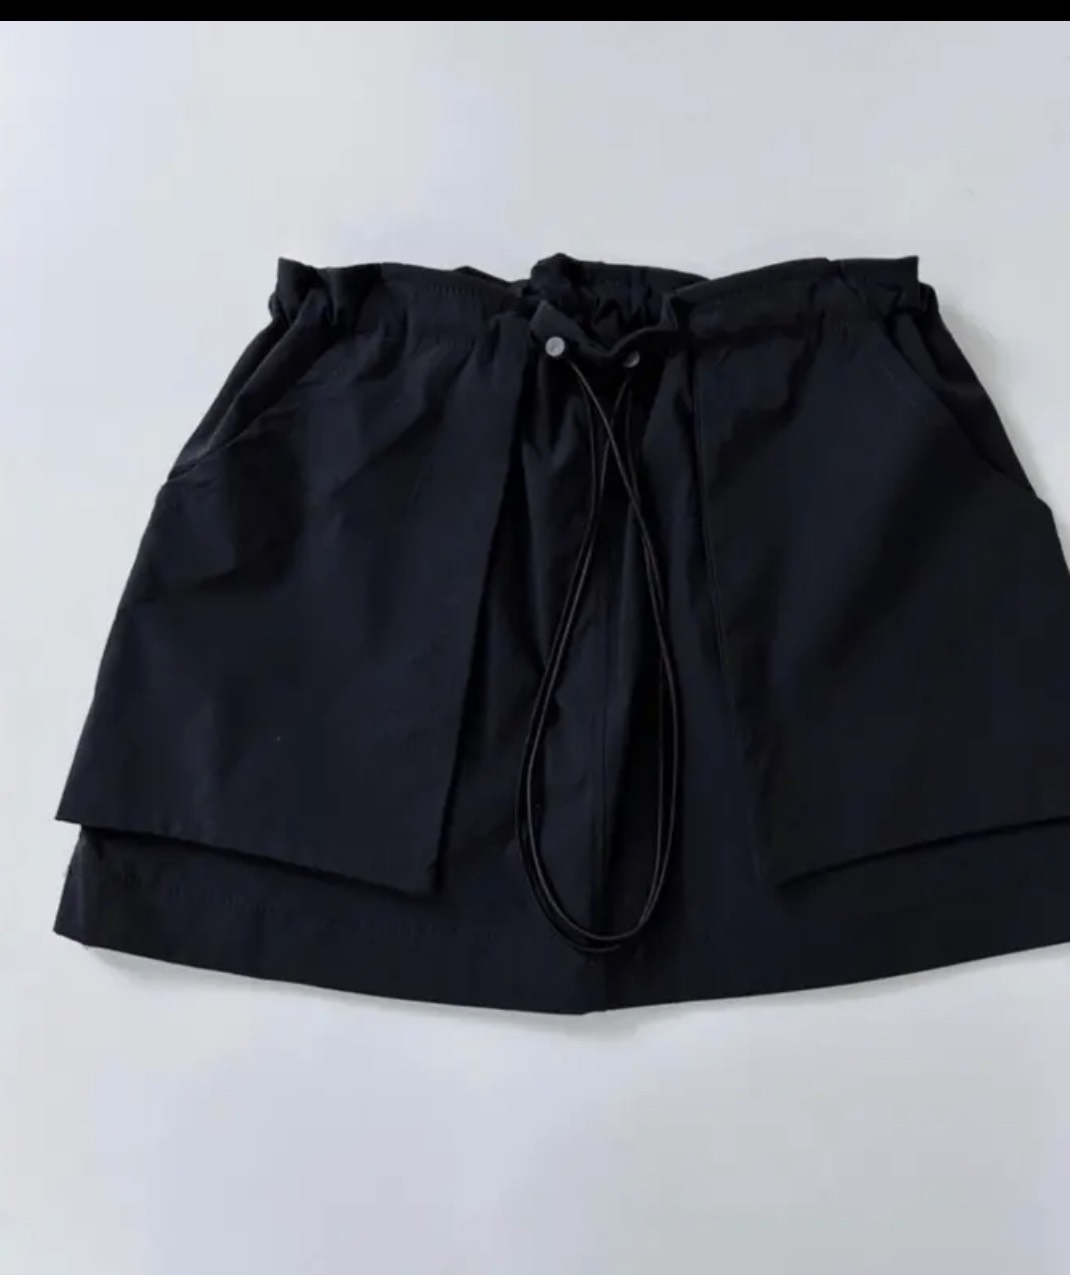 Chân váy chữ A ngắn màu đen cạp lưng cao có túi quần lót trong - Vải Umi  hàn - Mặc đi làm công sở học chơi đẹp - Chân váy | ThờiTrangNữ.vn